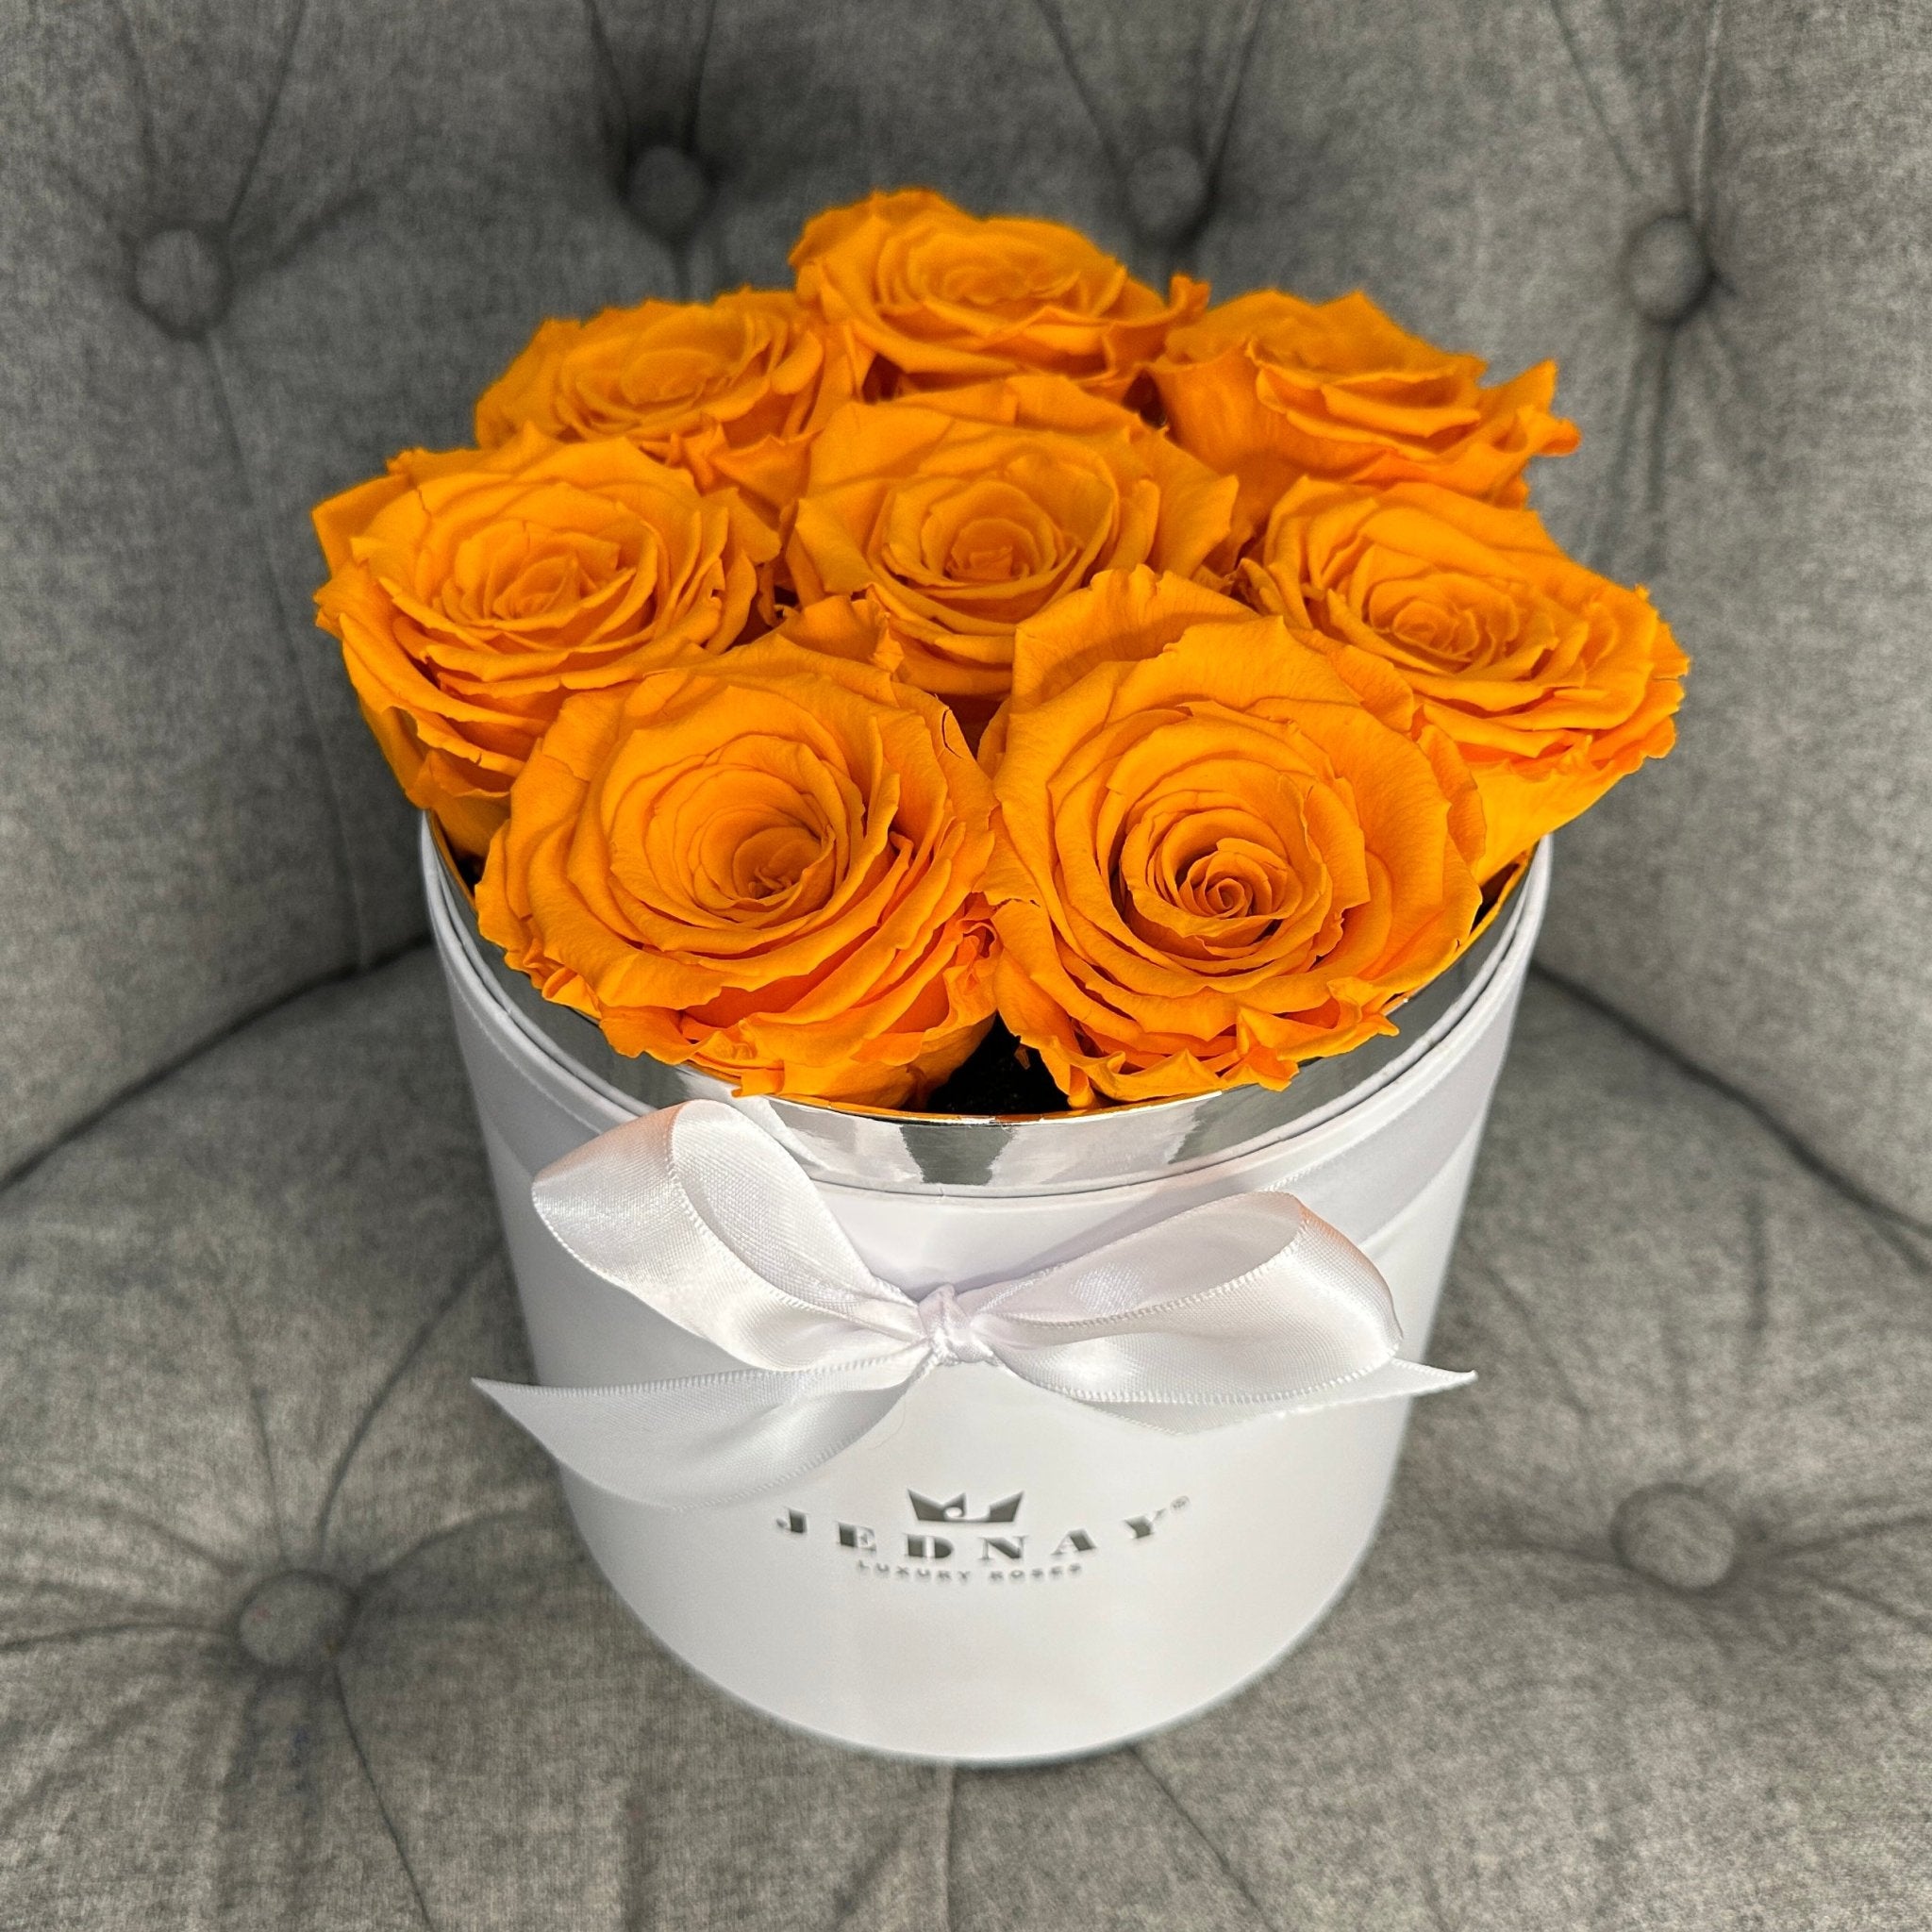 Medium Classic White Forever Rose Box - Sunset Orange Eternal Roses - Jednay Roses